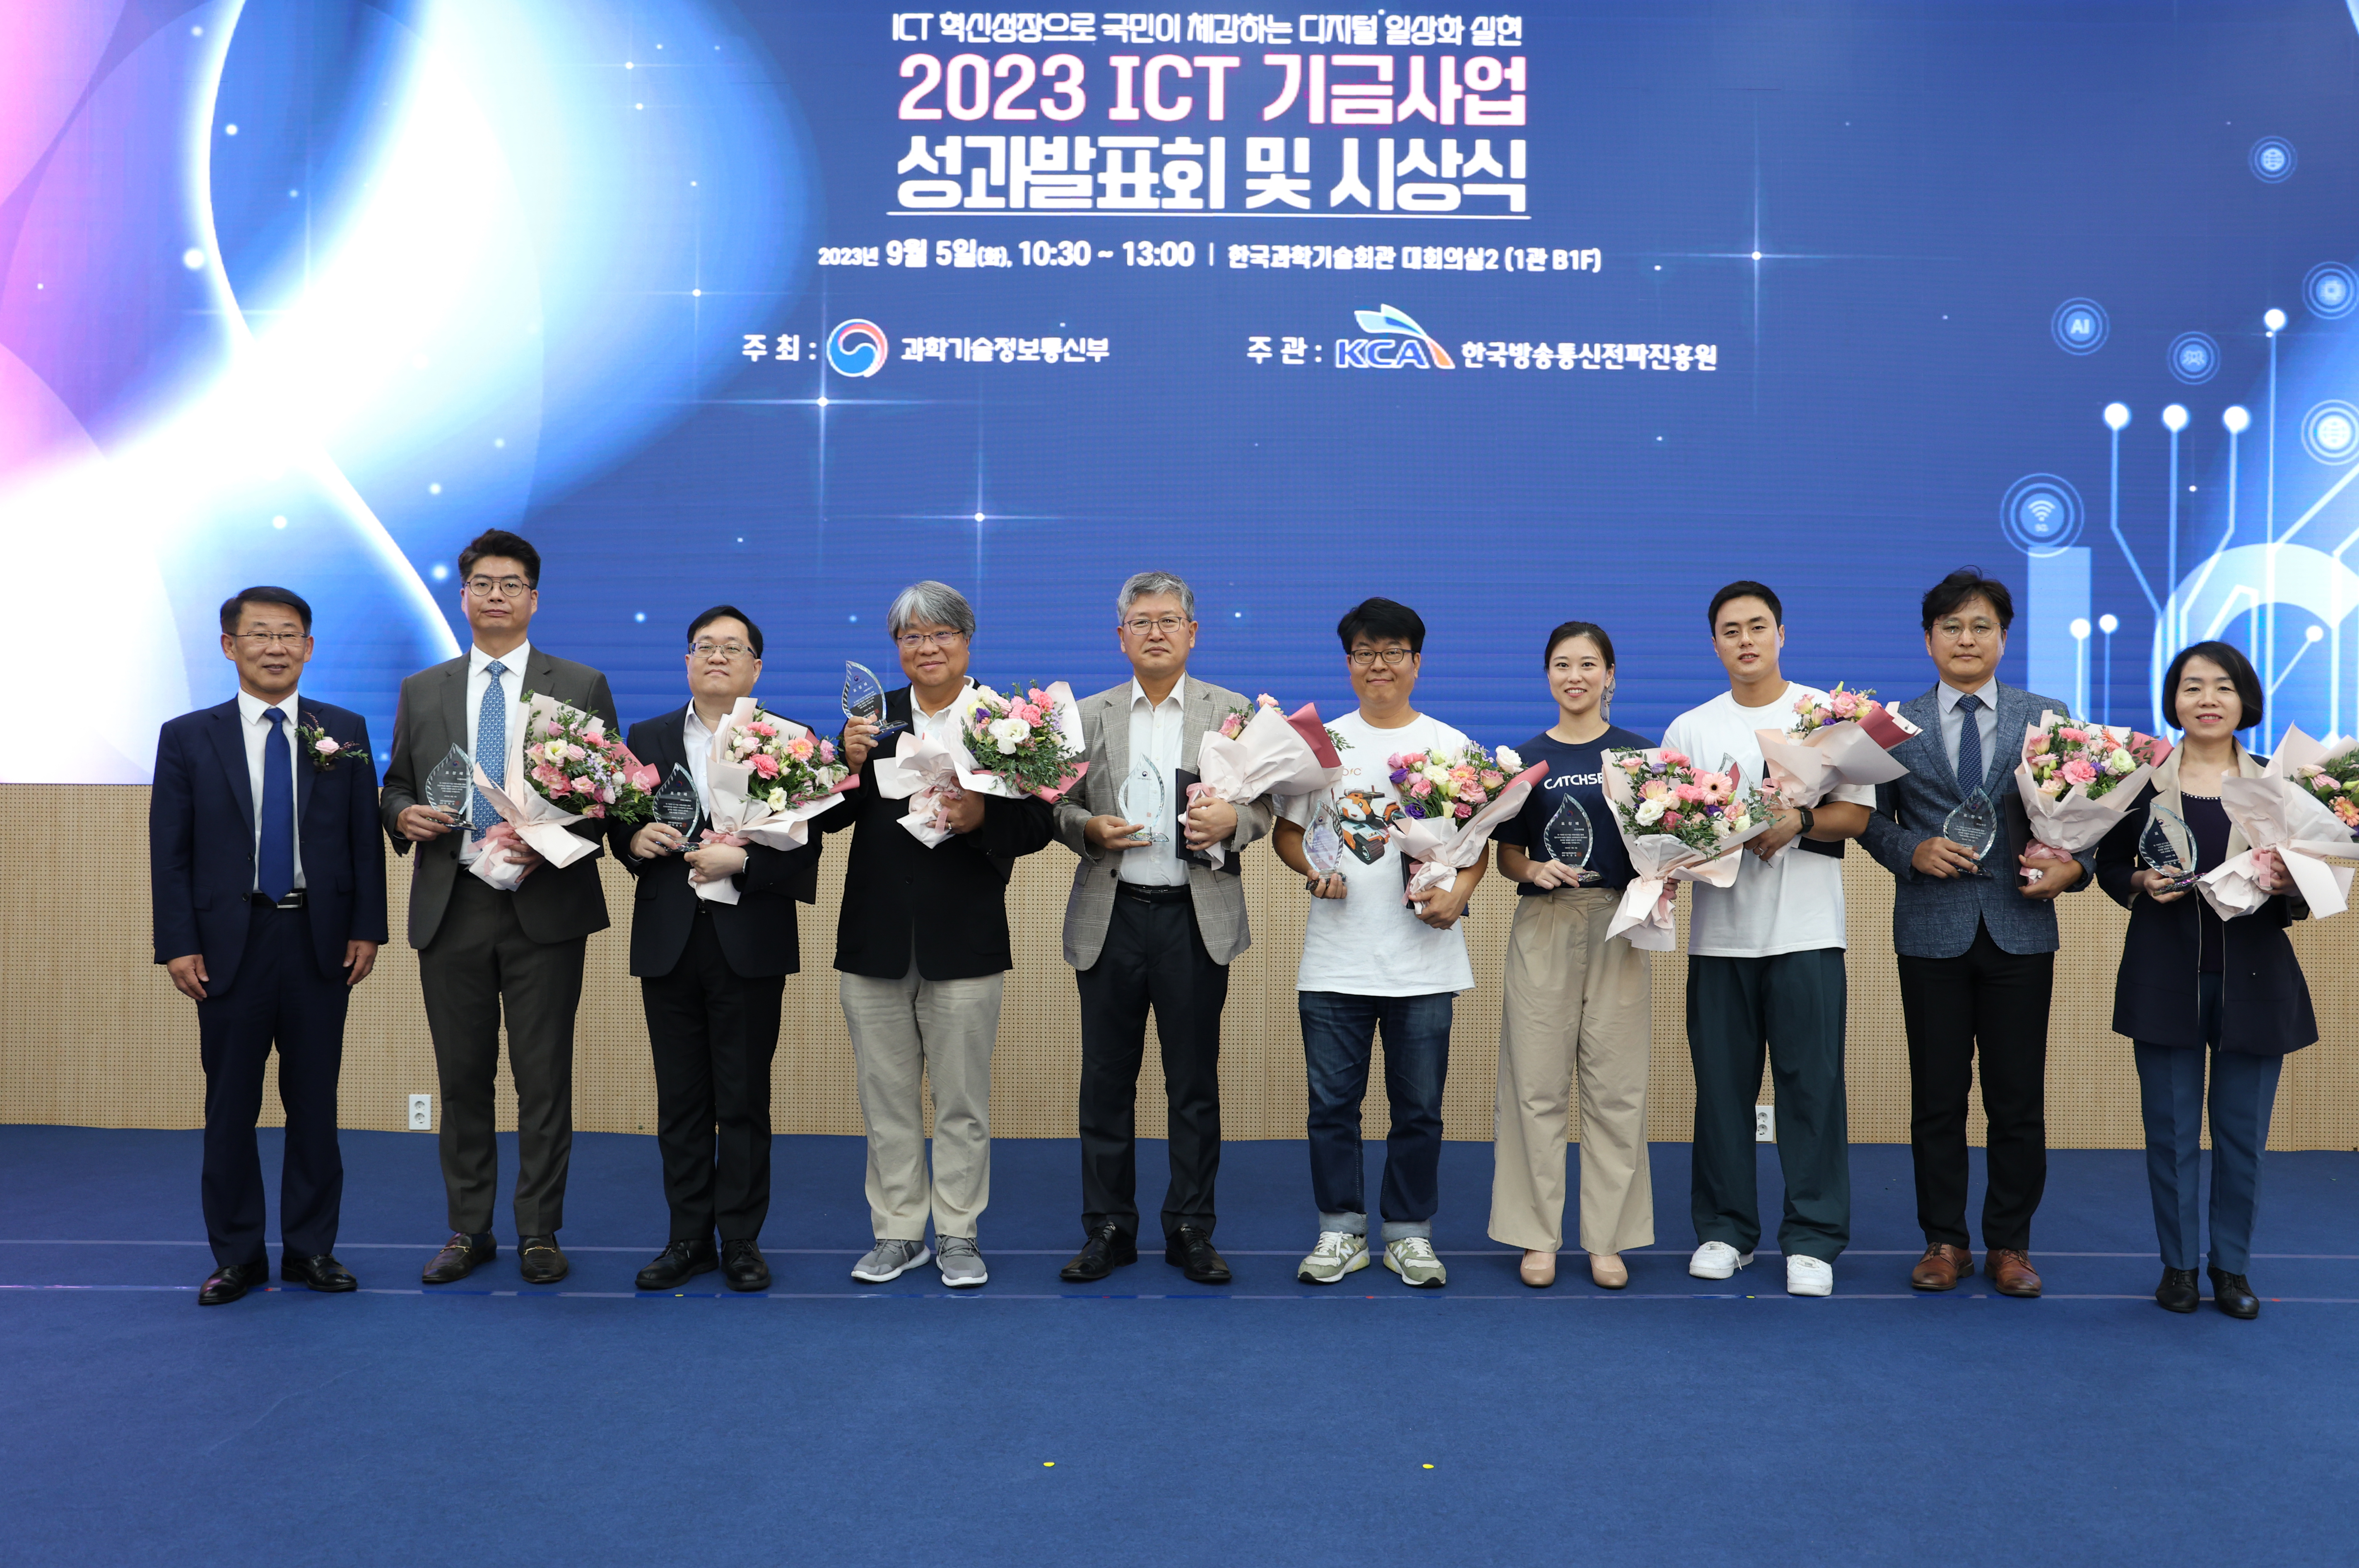 ICT 장관상 수상한 국내 생성형 AI 스타트업